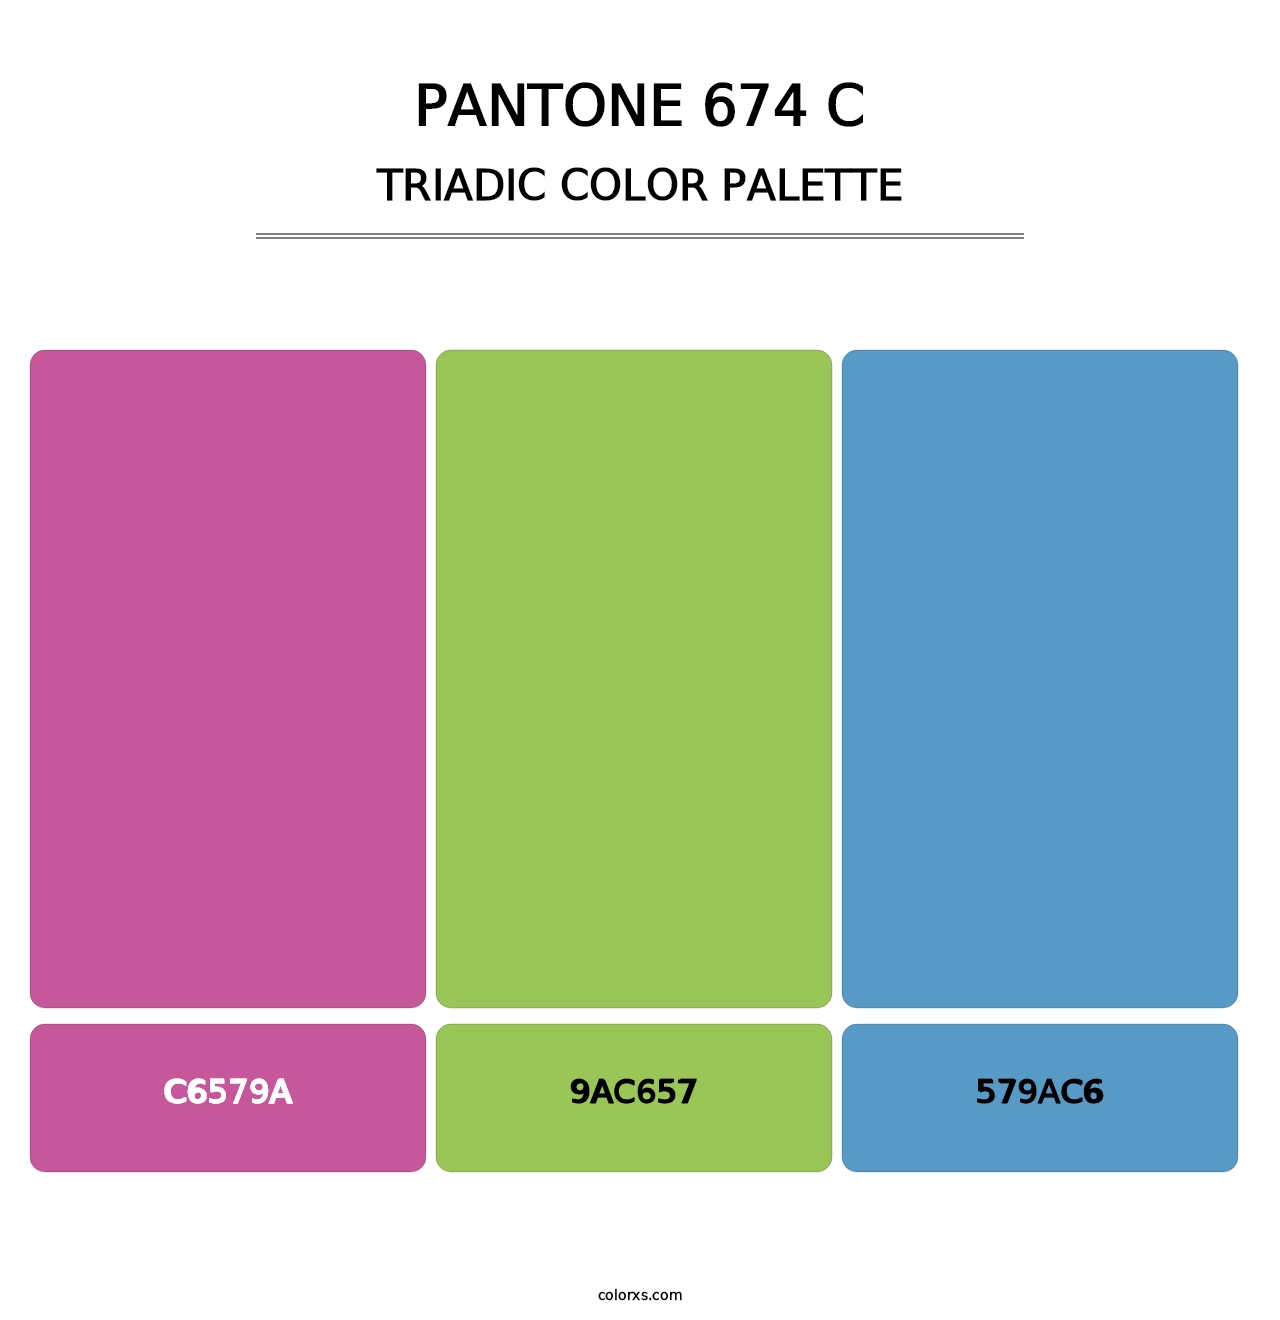 PANTONE 674 C - Triadic Color Palette